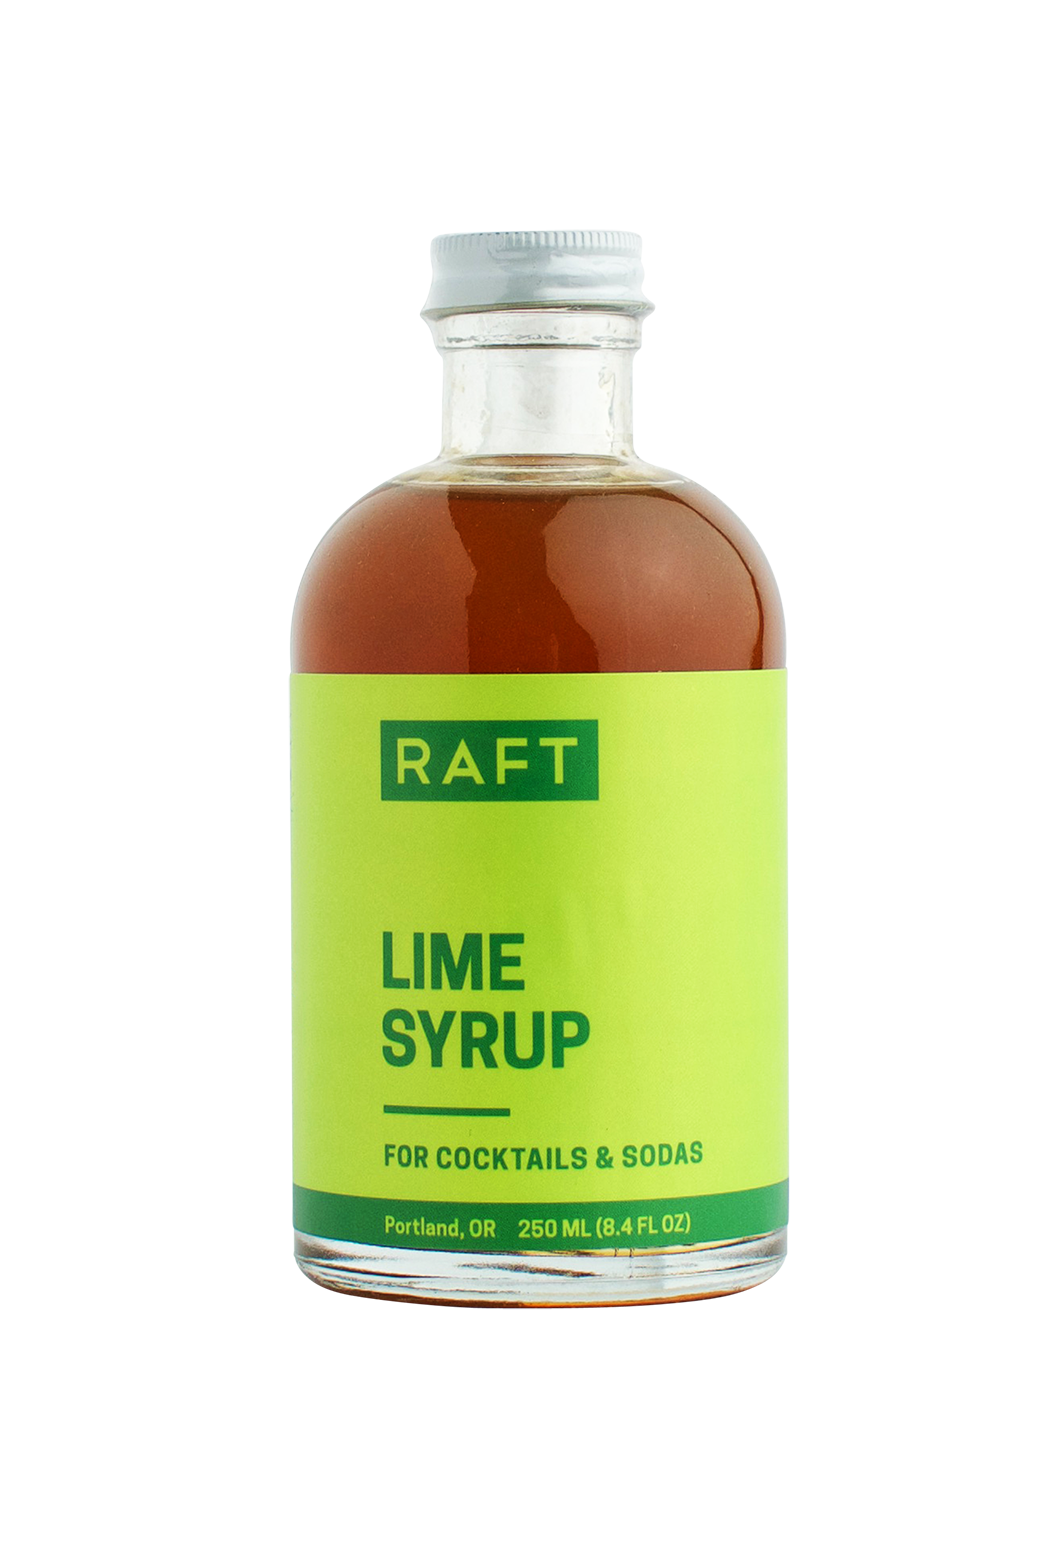 RAFT - Lime Syrup